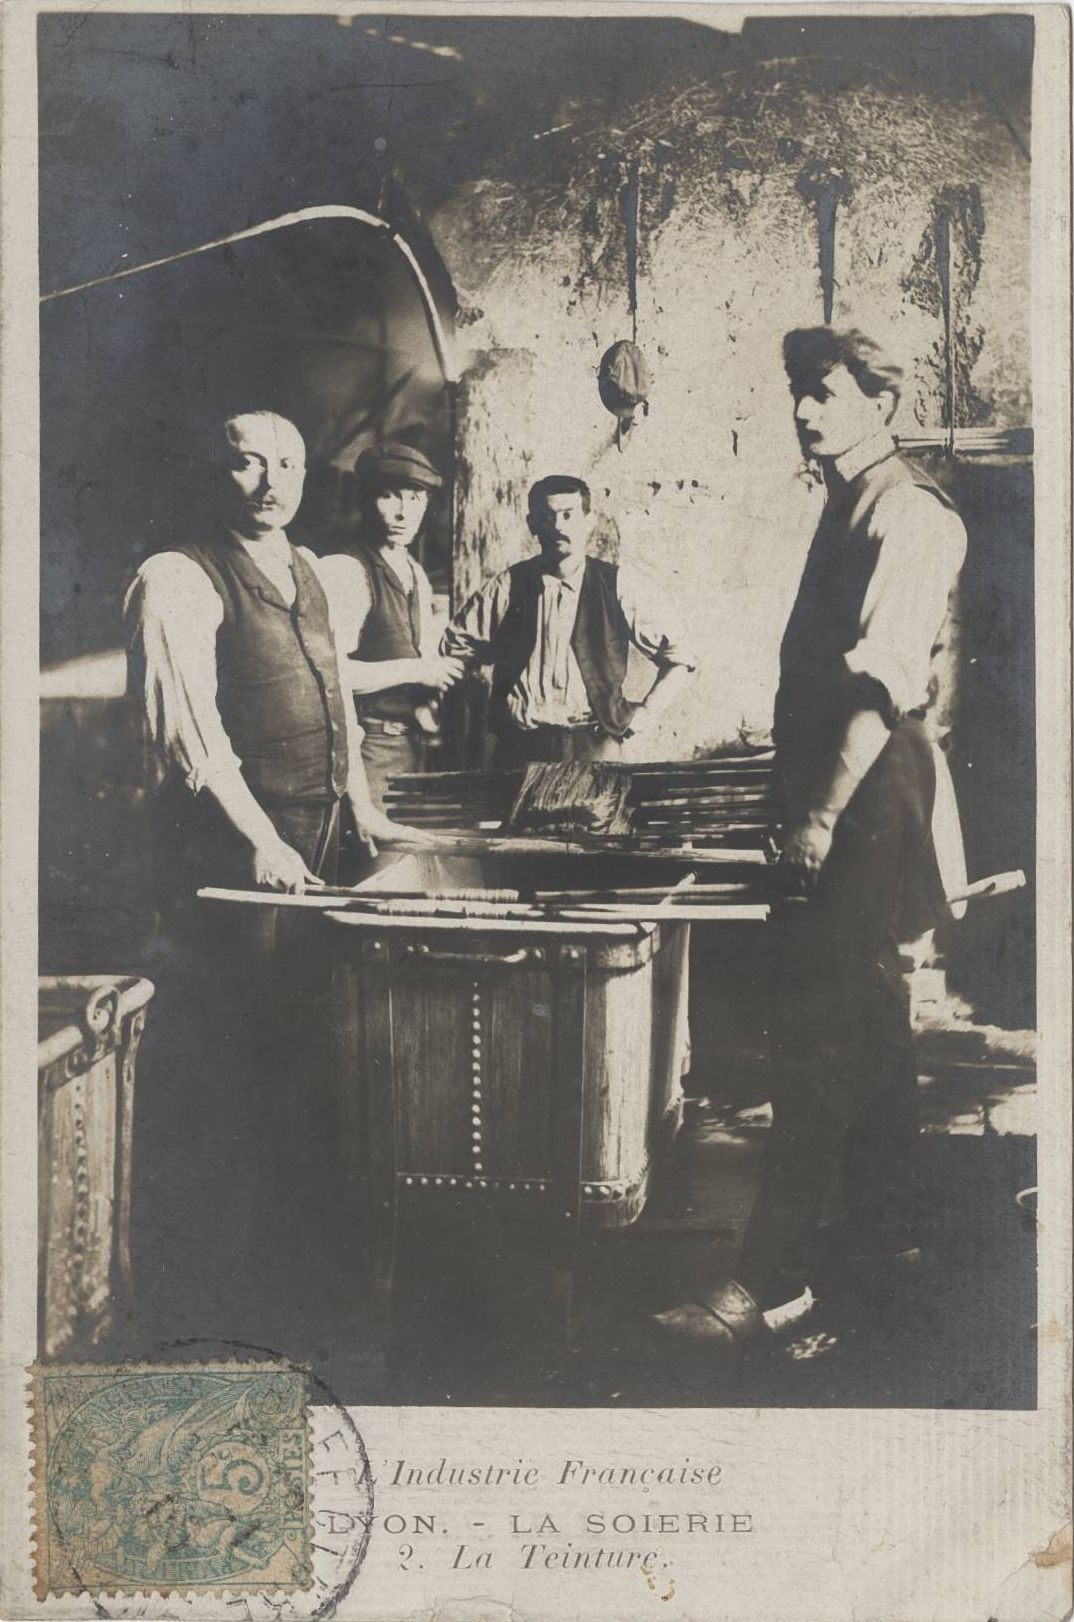 La soierie, la teinture par des ouvriers : carte postale NB (vers 1910, cote : 4FI/4185)